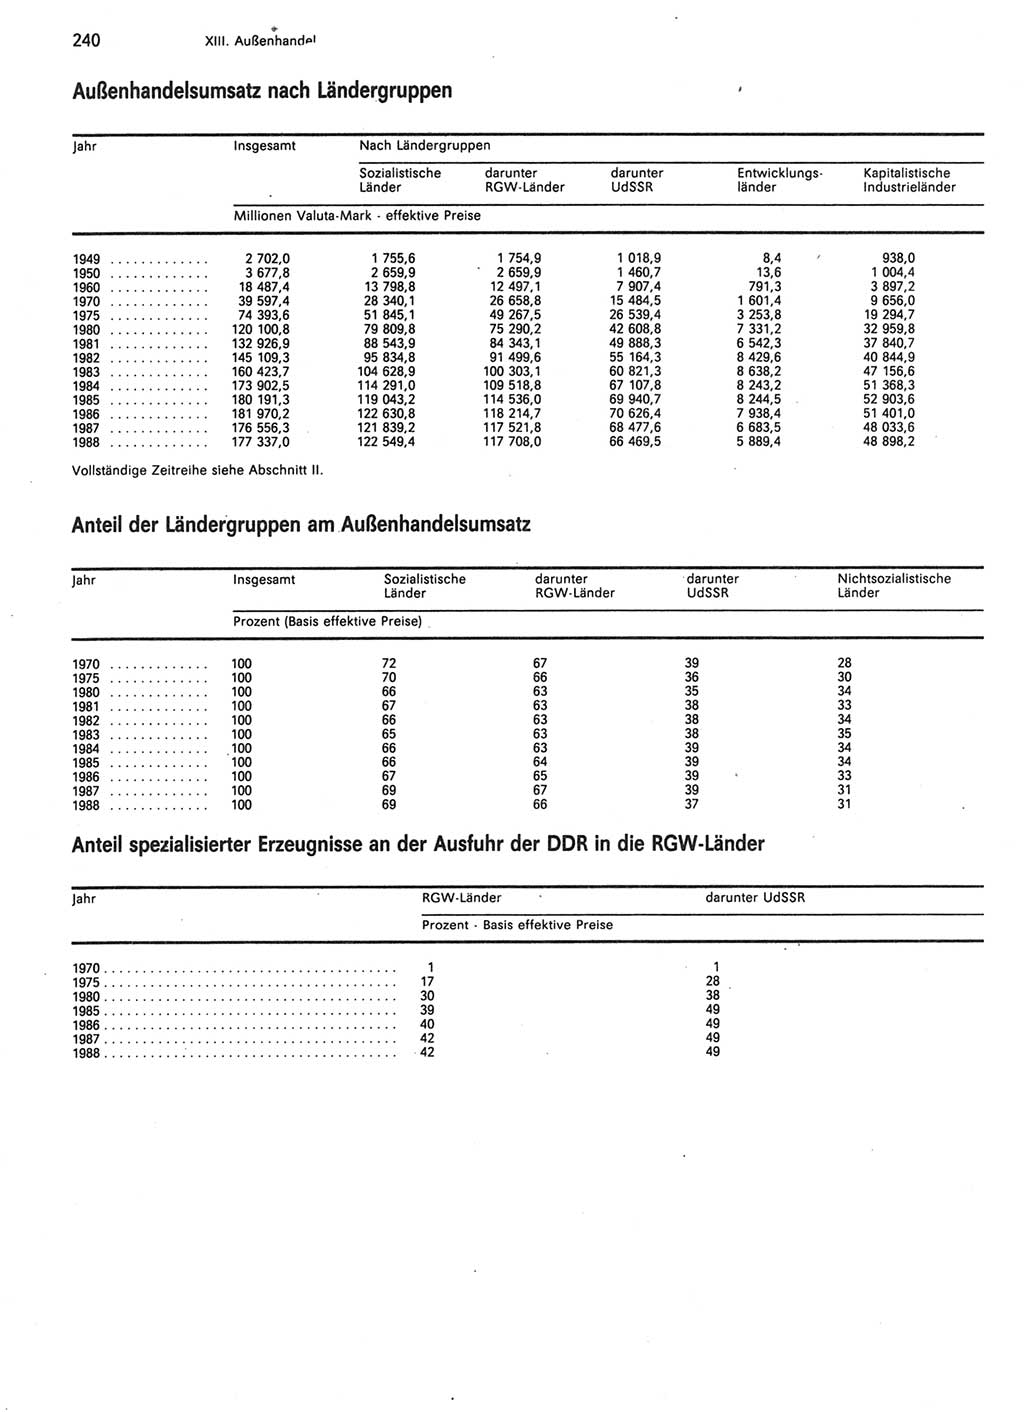 Statistisches Jahrbuch der Deutschen Demokratischen Republik (DDR) 1989, Seite 240 (Stat. Jb. DDR 1989, S. 240)